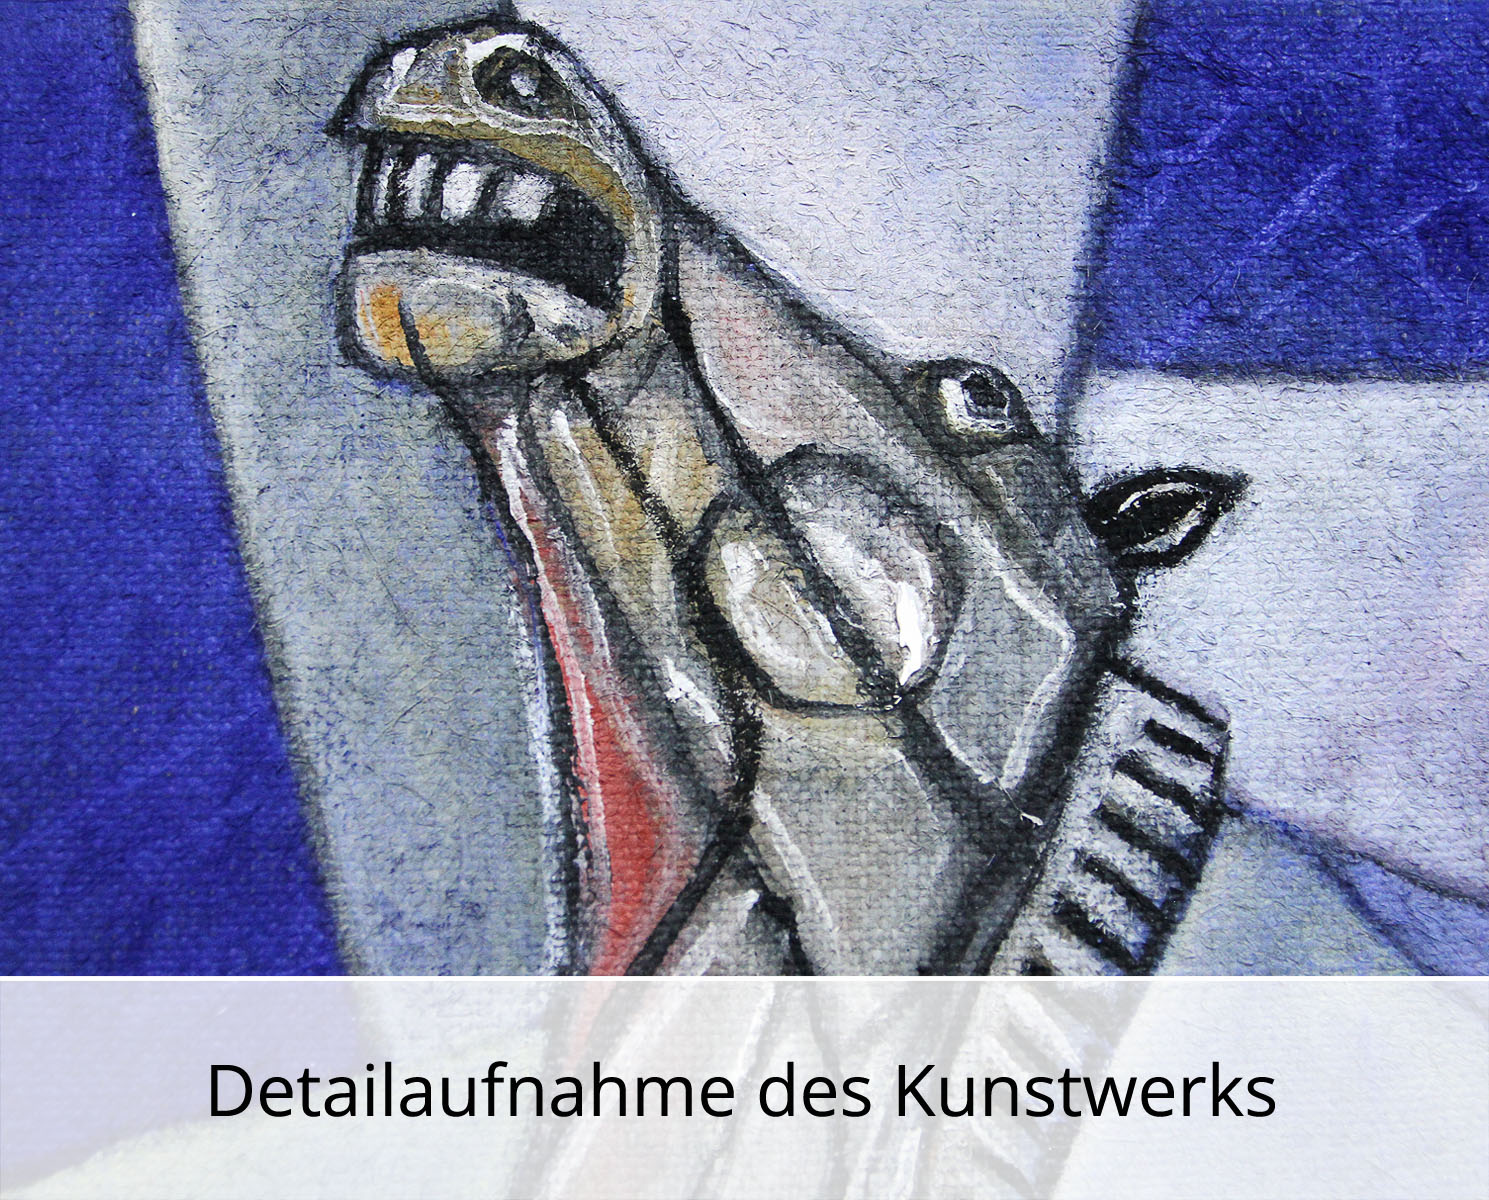 C. Blechschmidt: "Das Tier", Original/Unikat, zeitgenössisches Ölgemälde